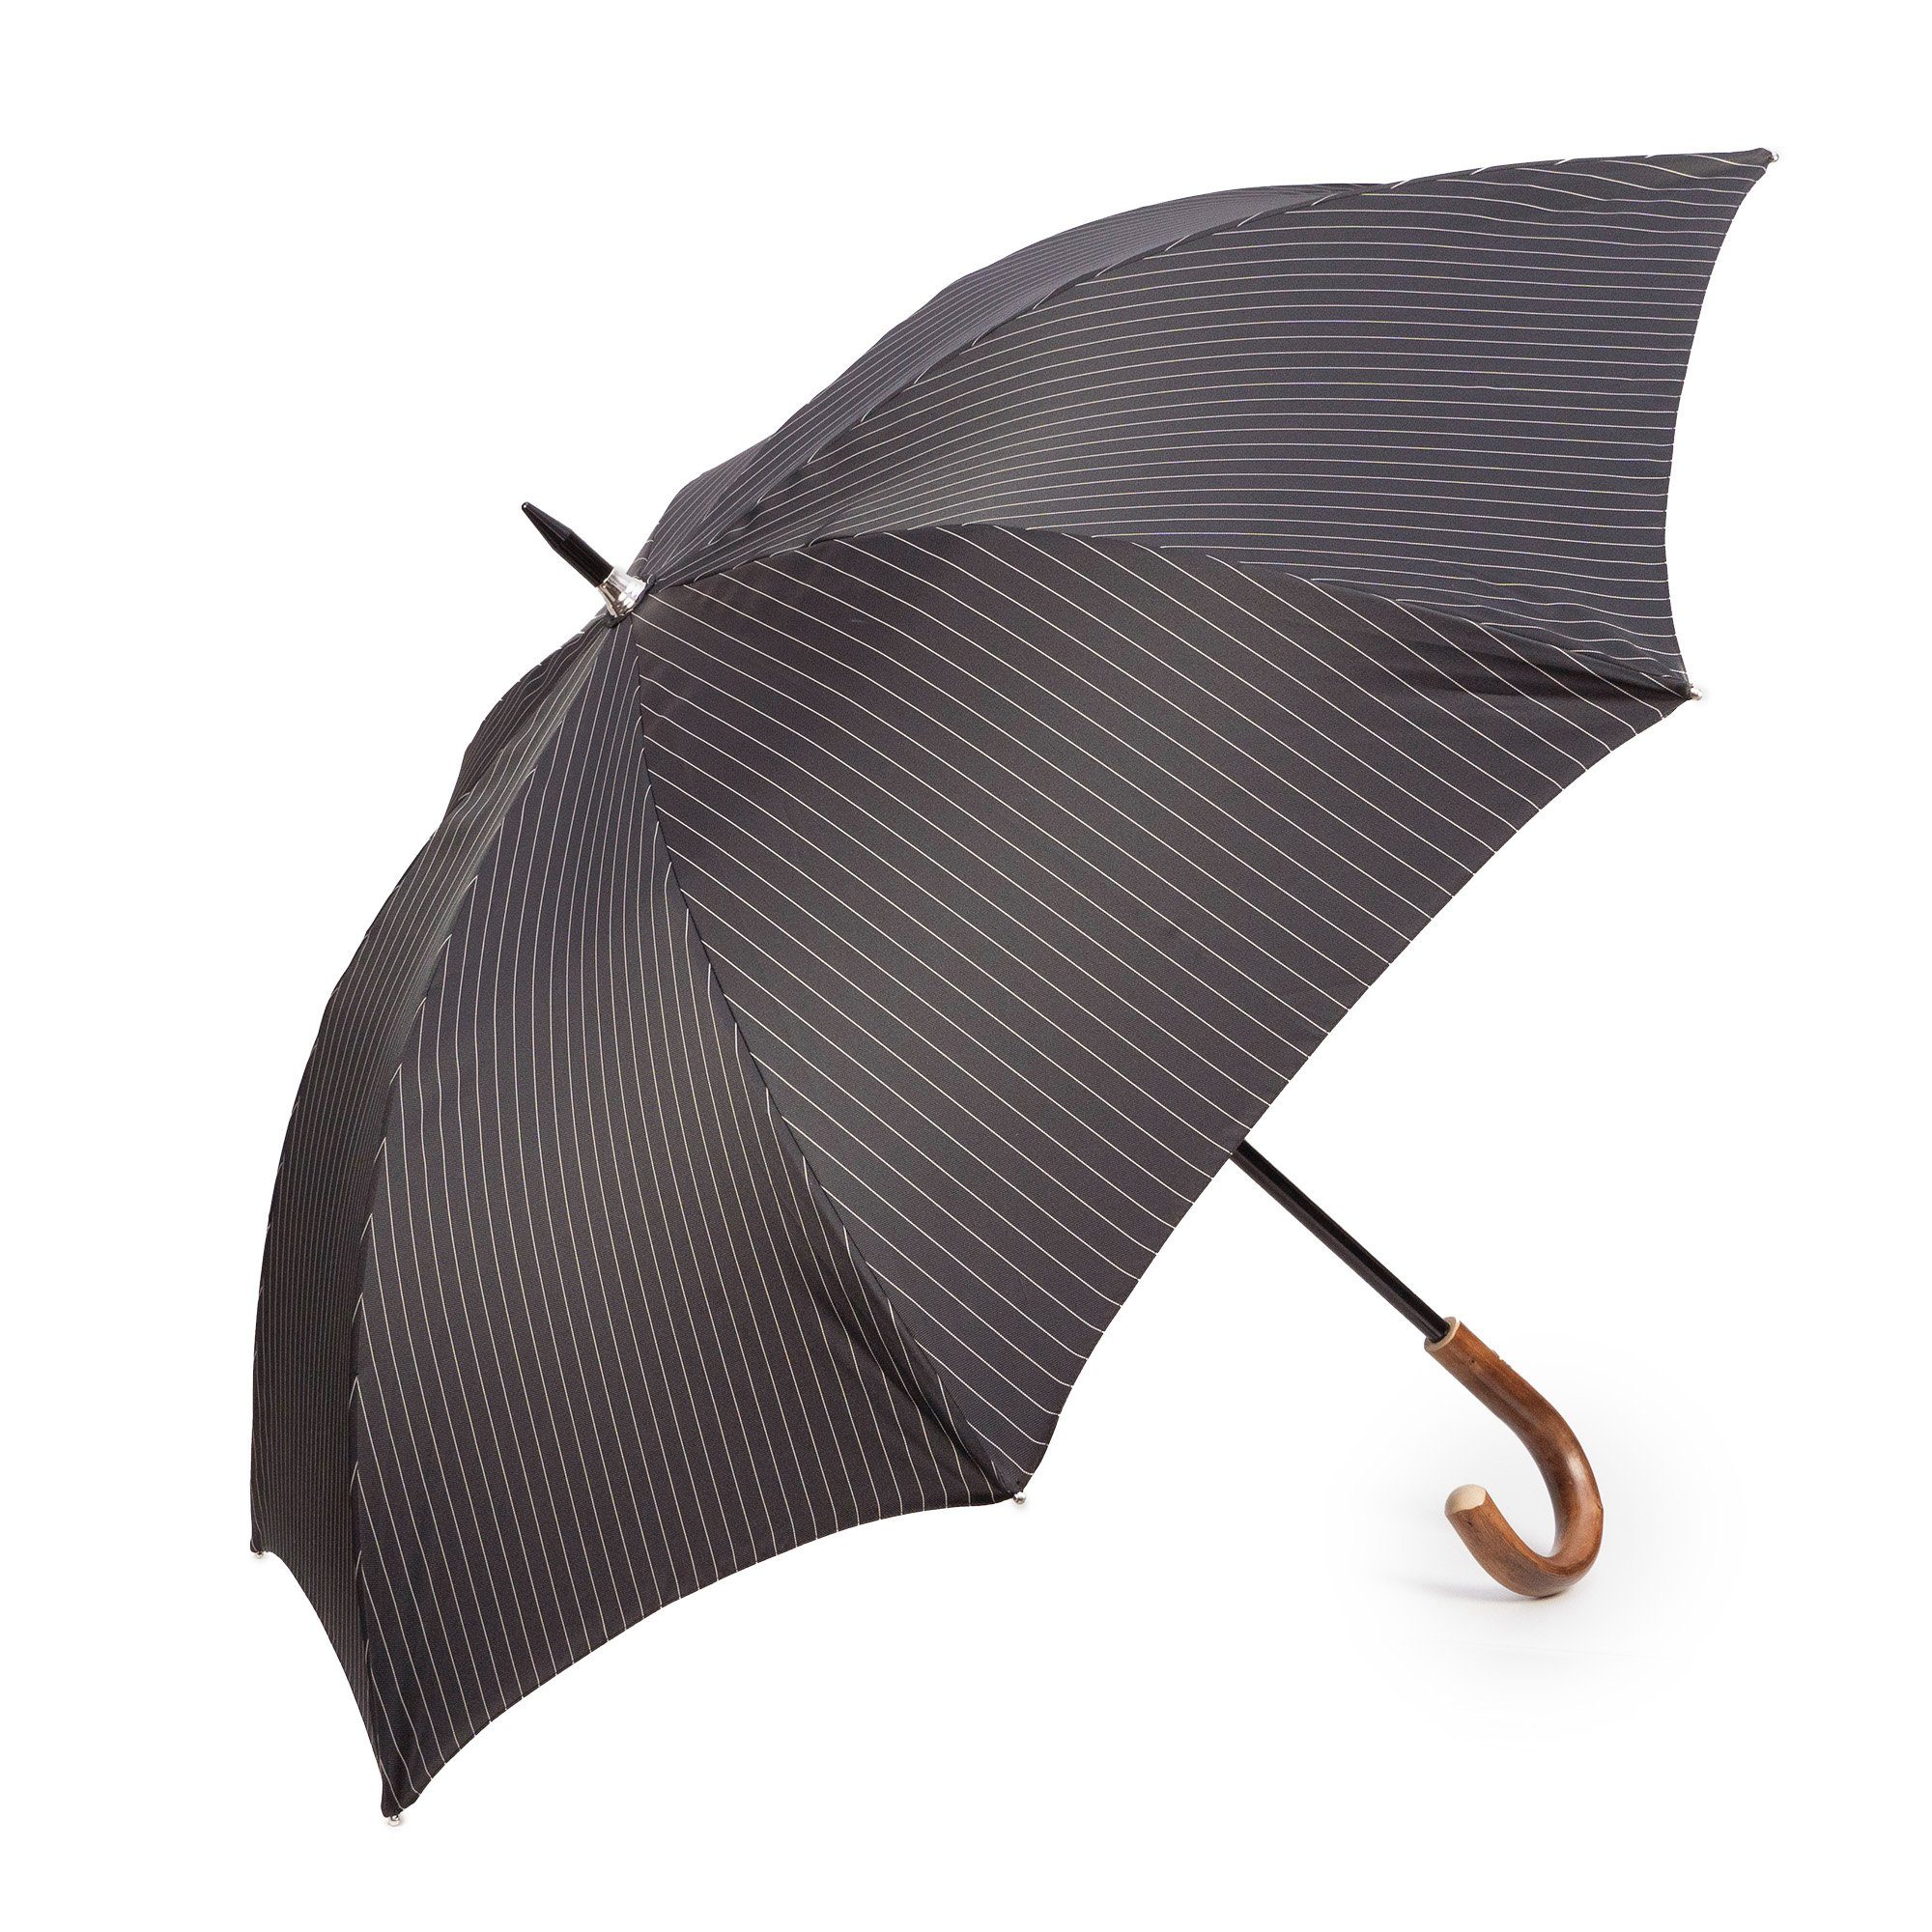 in Italy Stockregenschirm, Luxus-Regenschirm, Francesco schwarz-gestreift, Maglia Handmade